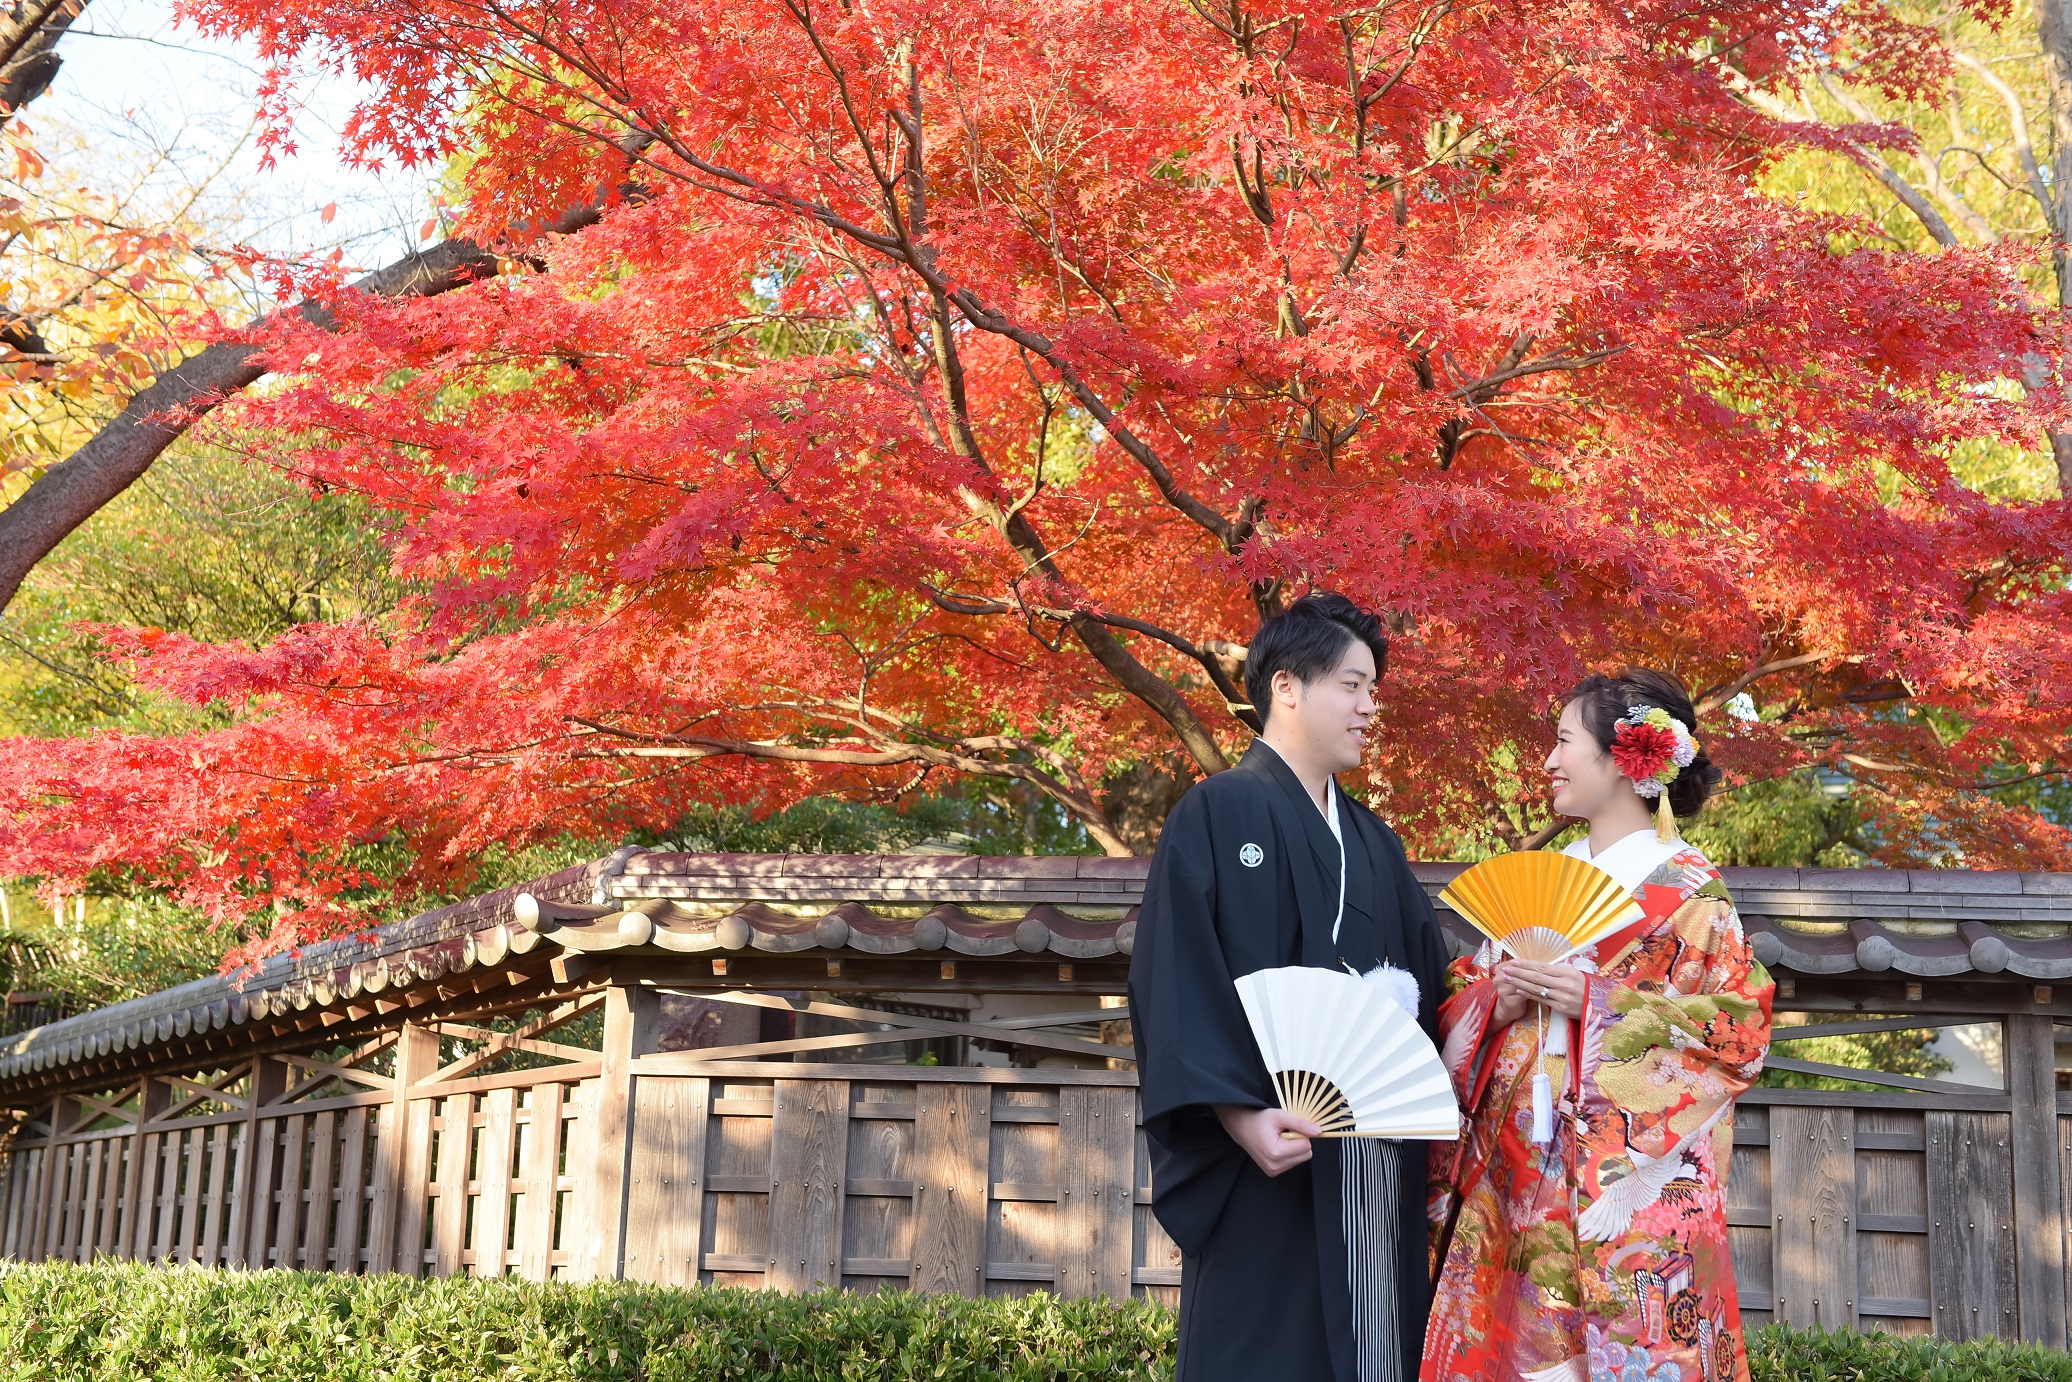 秋の和装前撮り 紅葉が美しい関東の日本庭園5選 紅葉で撮りたいおすすめポーズ3選 和装で挙げる結婚式 前撮り撮影の華雅苑